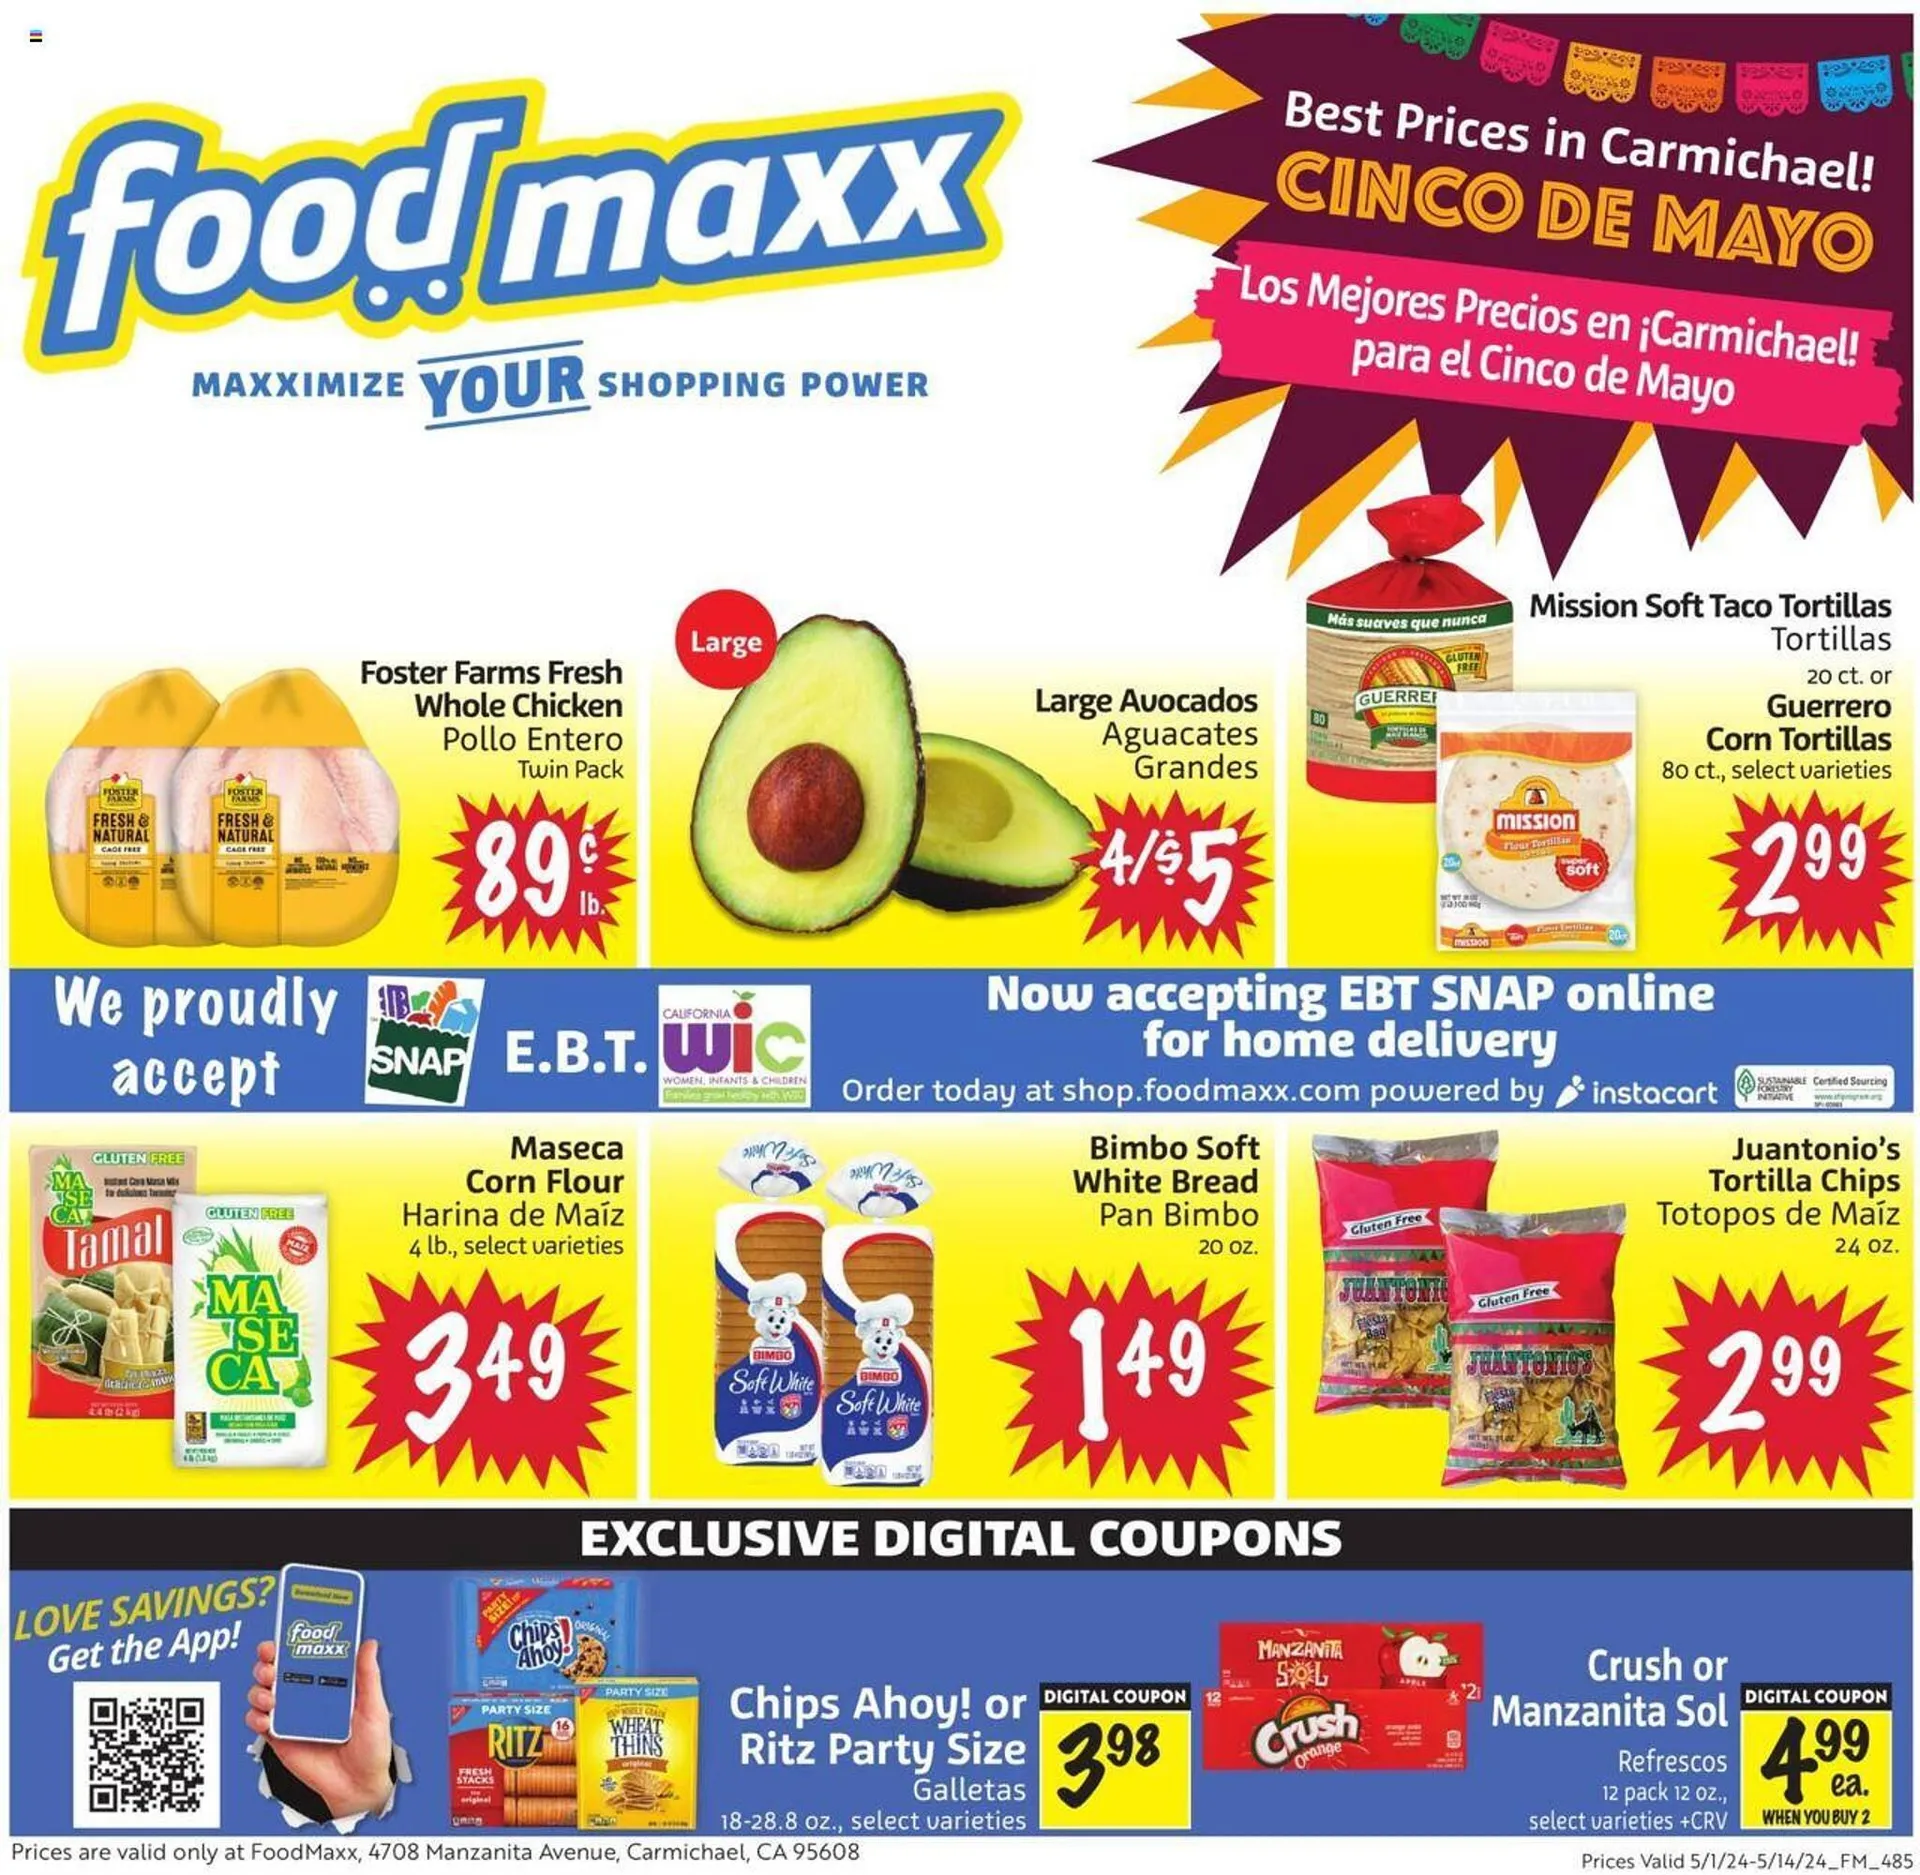 Foodmaxx Weekly Ad - 1